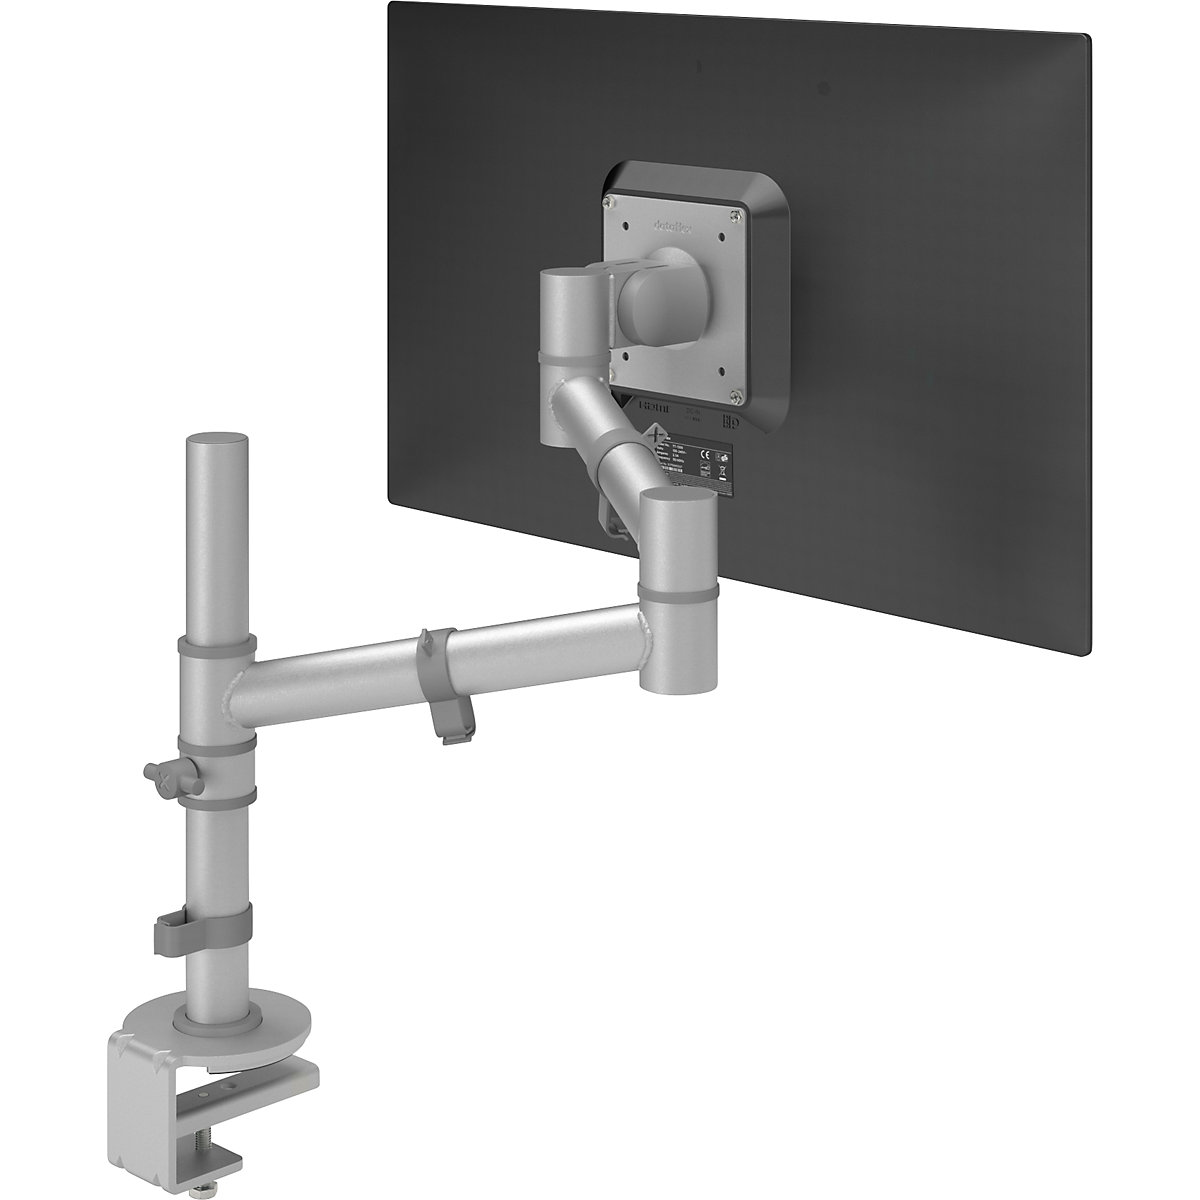 Monitorarm VIEWGO – Dataflex, 1 enkele arm voor 1 monitor, zilverkleurig-11